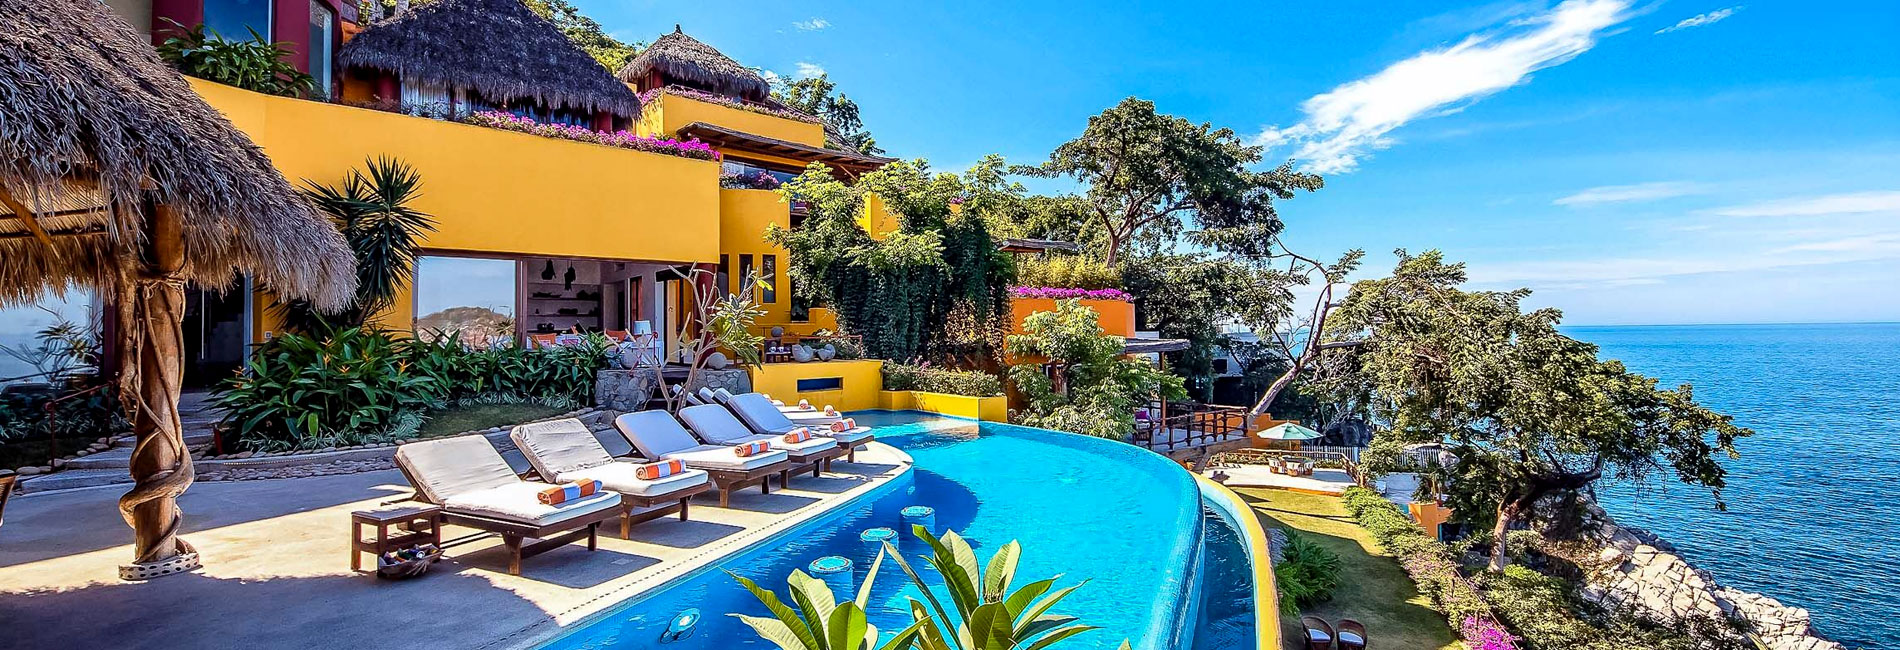 luxury villas mexico